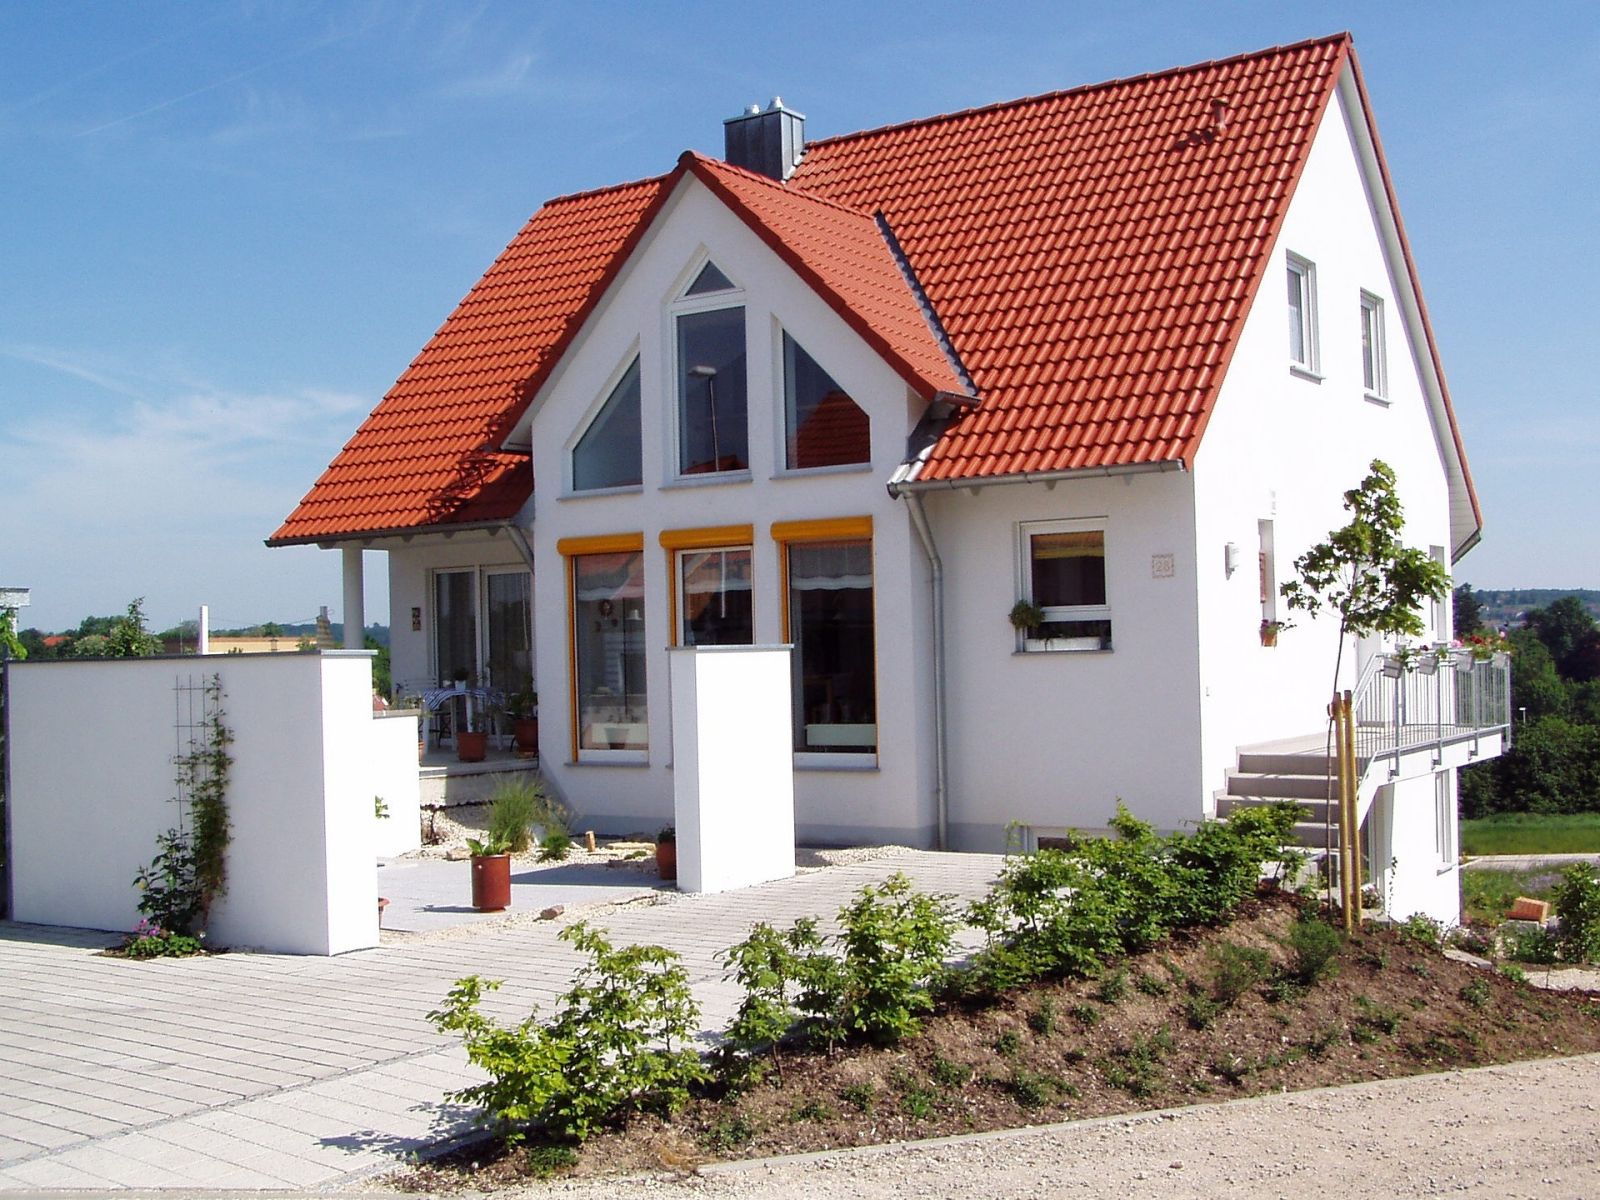 Immobilienverkauf leicht gemacht mit Makler Düsseldorf